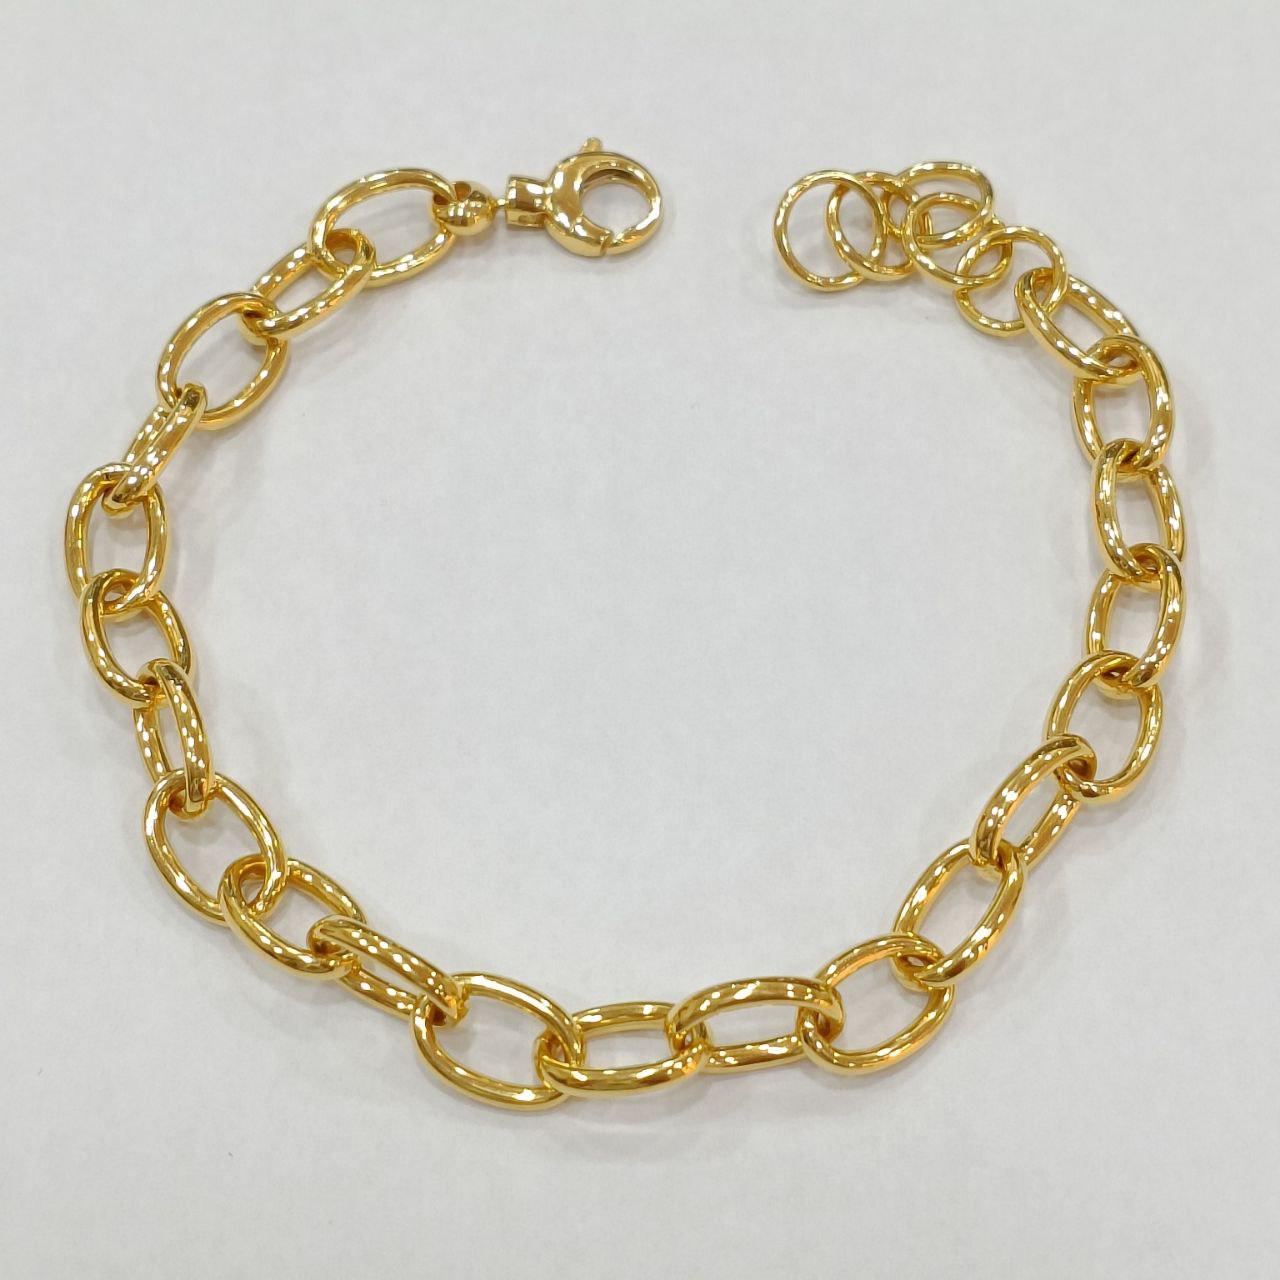 22k / 916 Gold Oval Ring Bracelet Designer-916 gold-Best Gold Shop